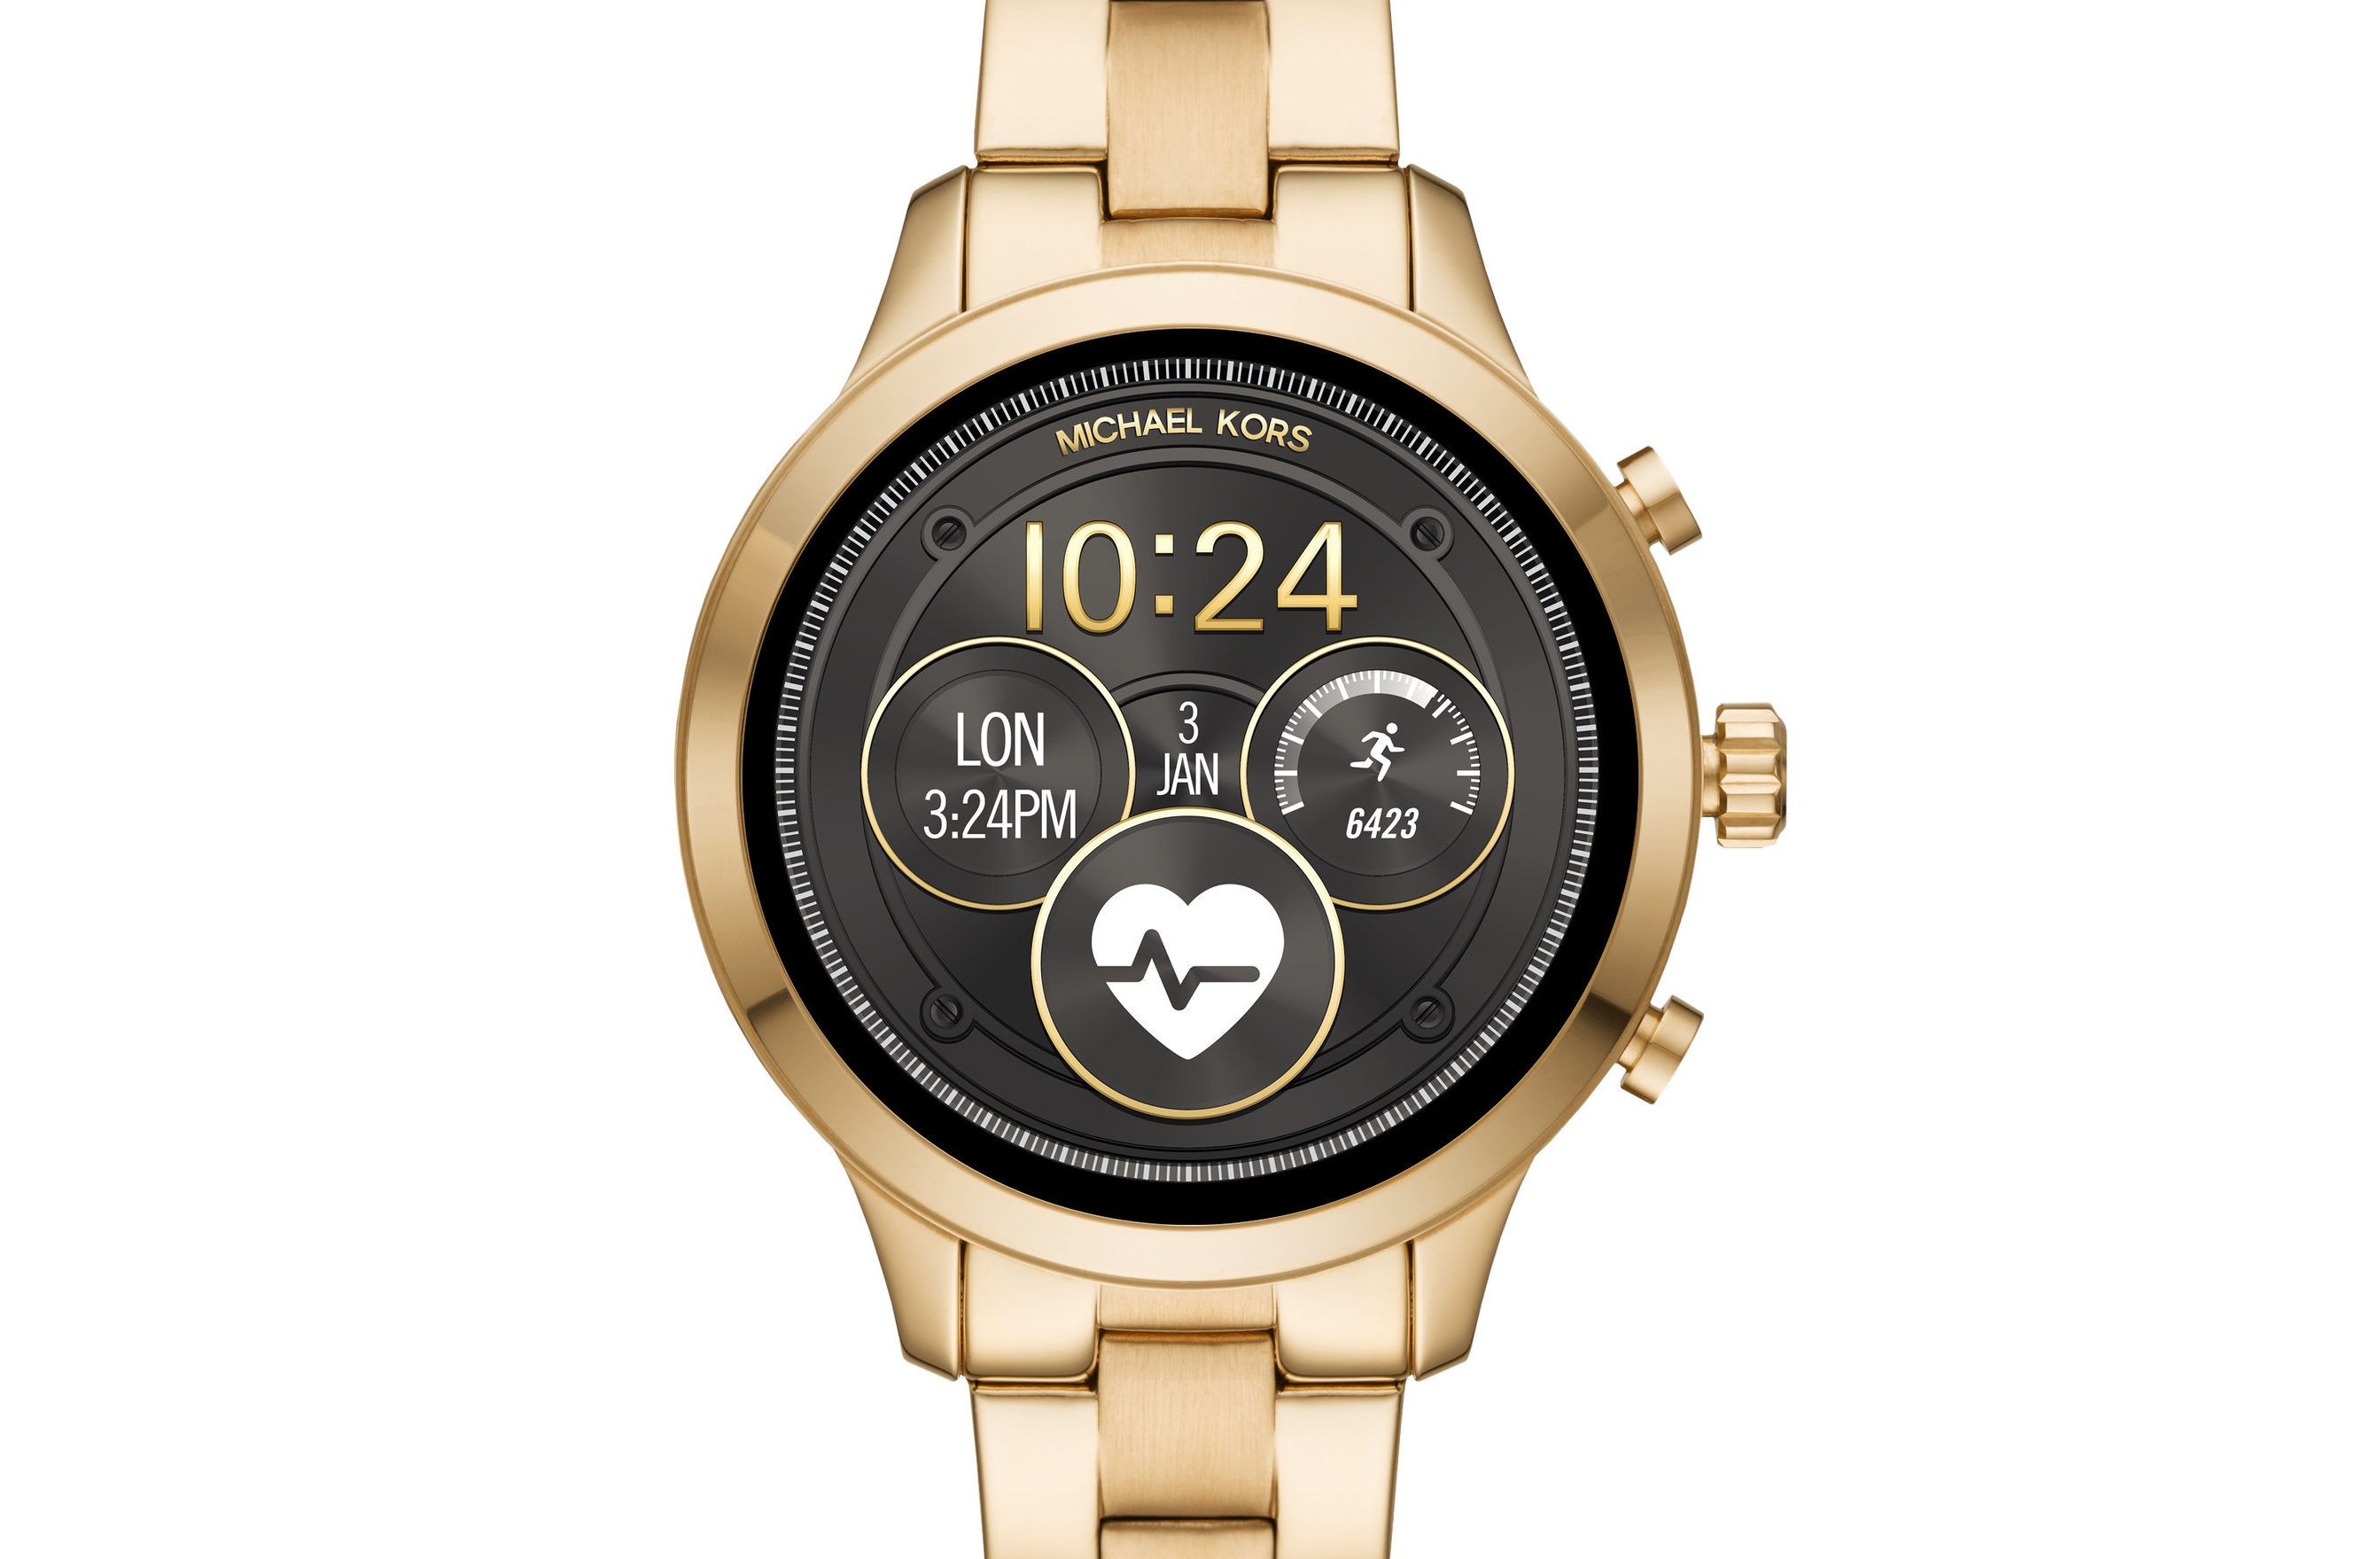 Michael Kors Runway watch returns as an innovative smartwatch